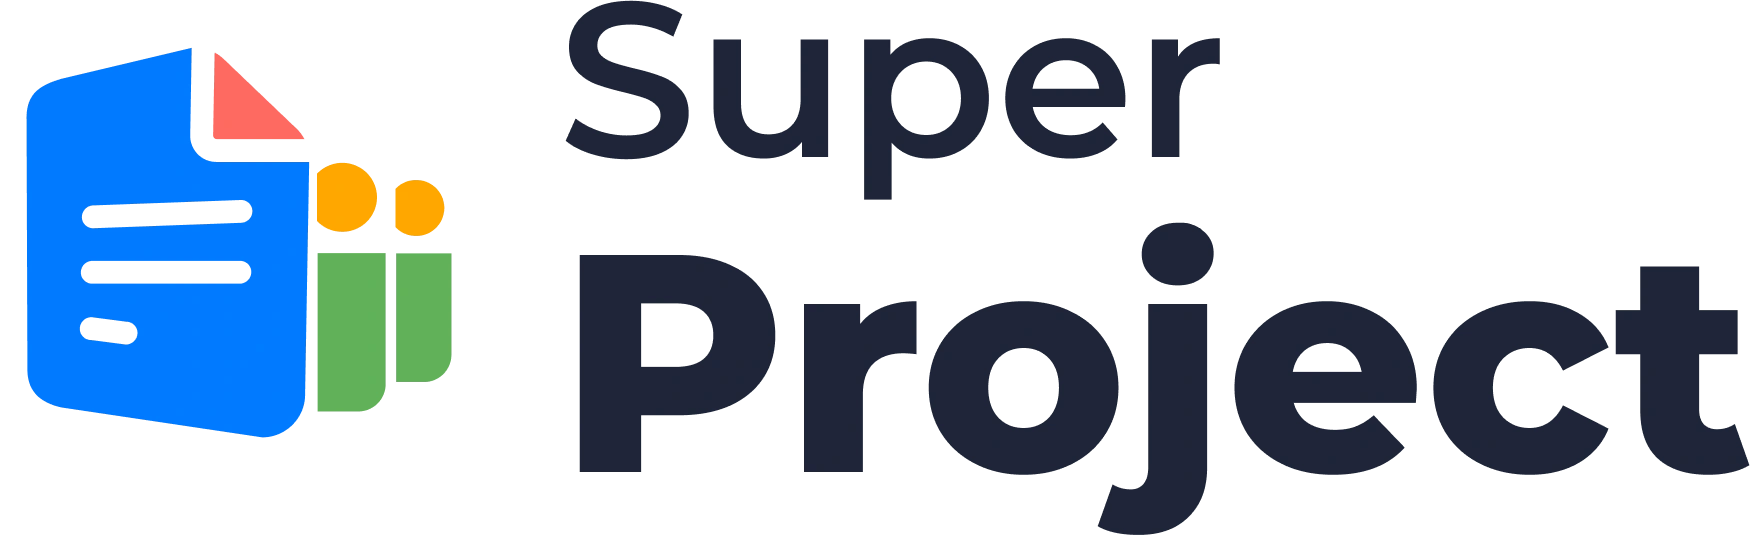 Super Project Logo